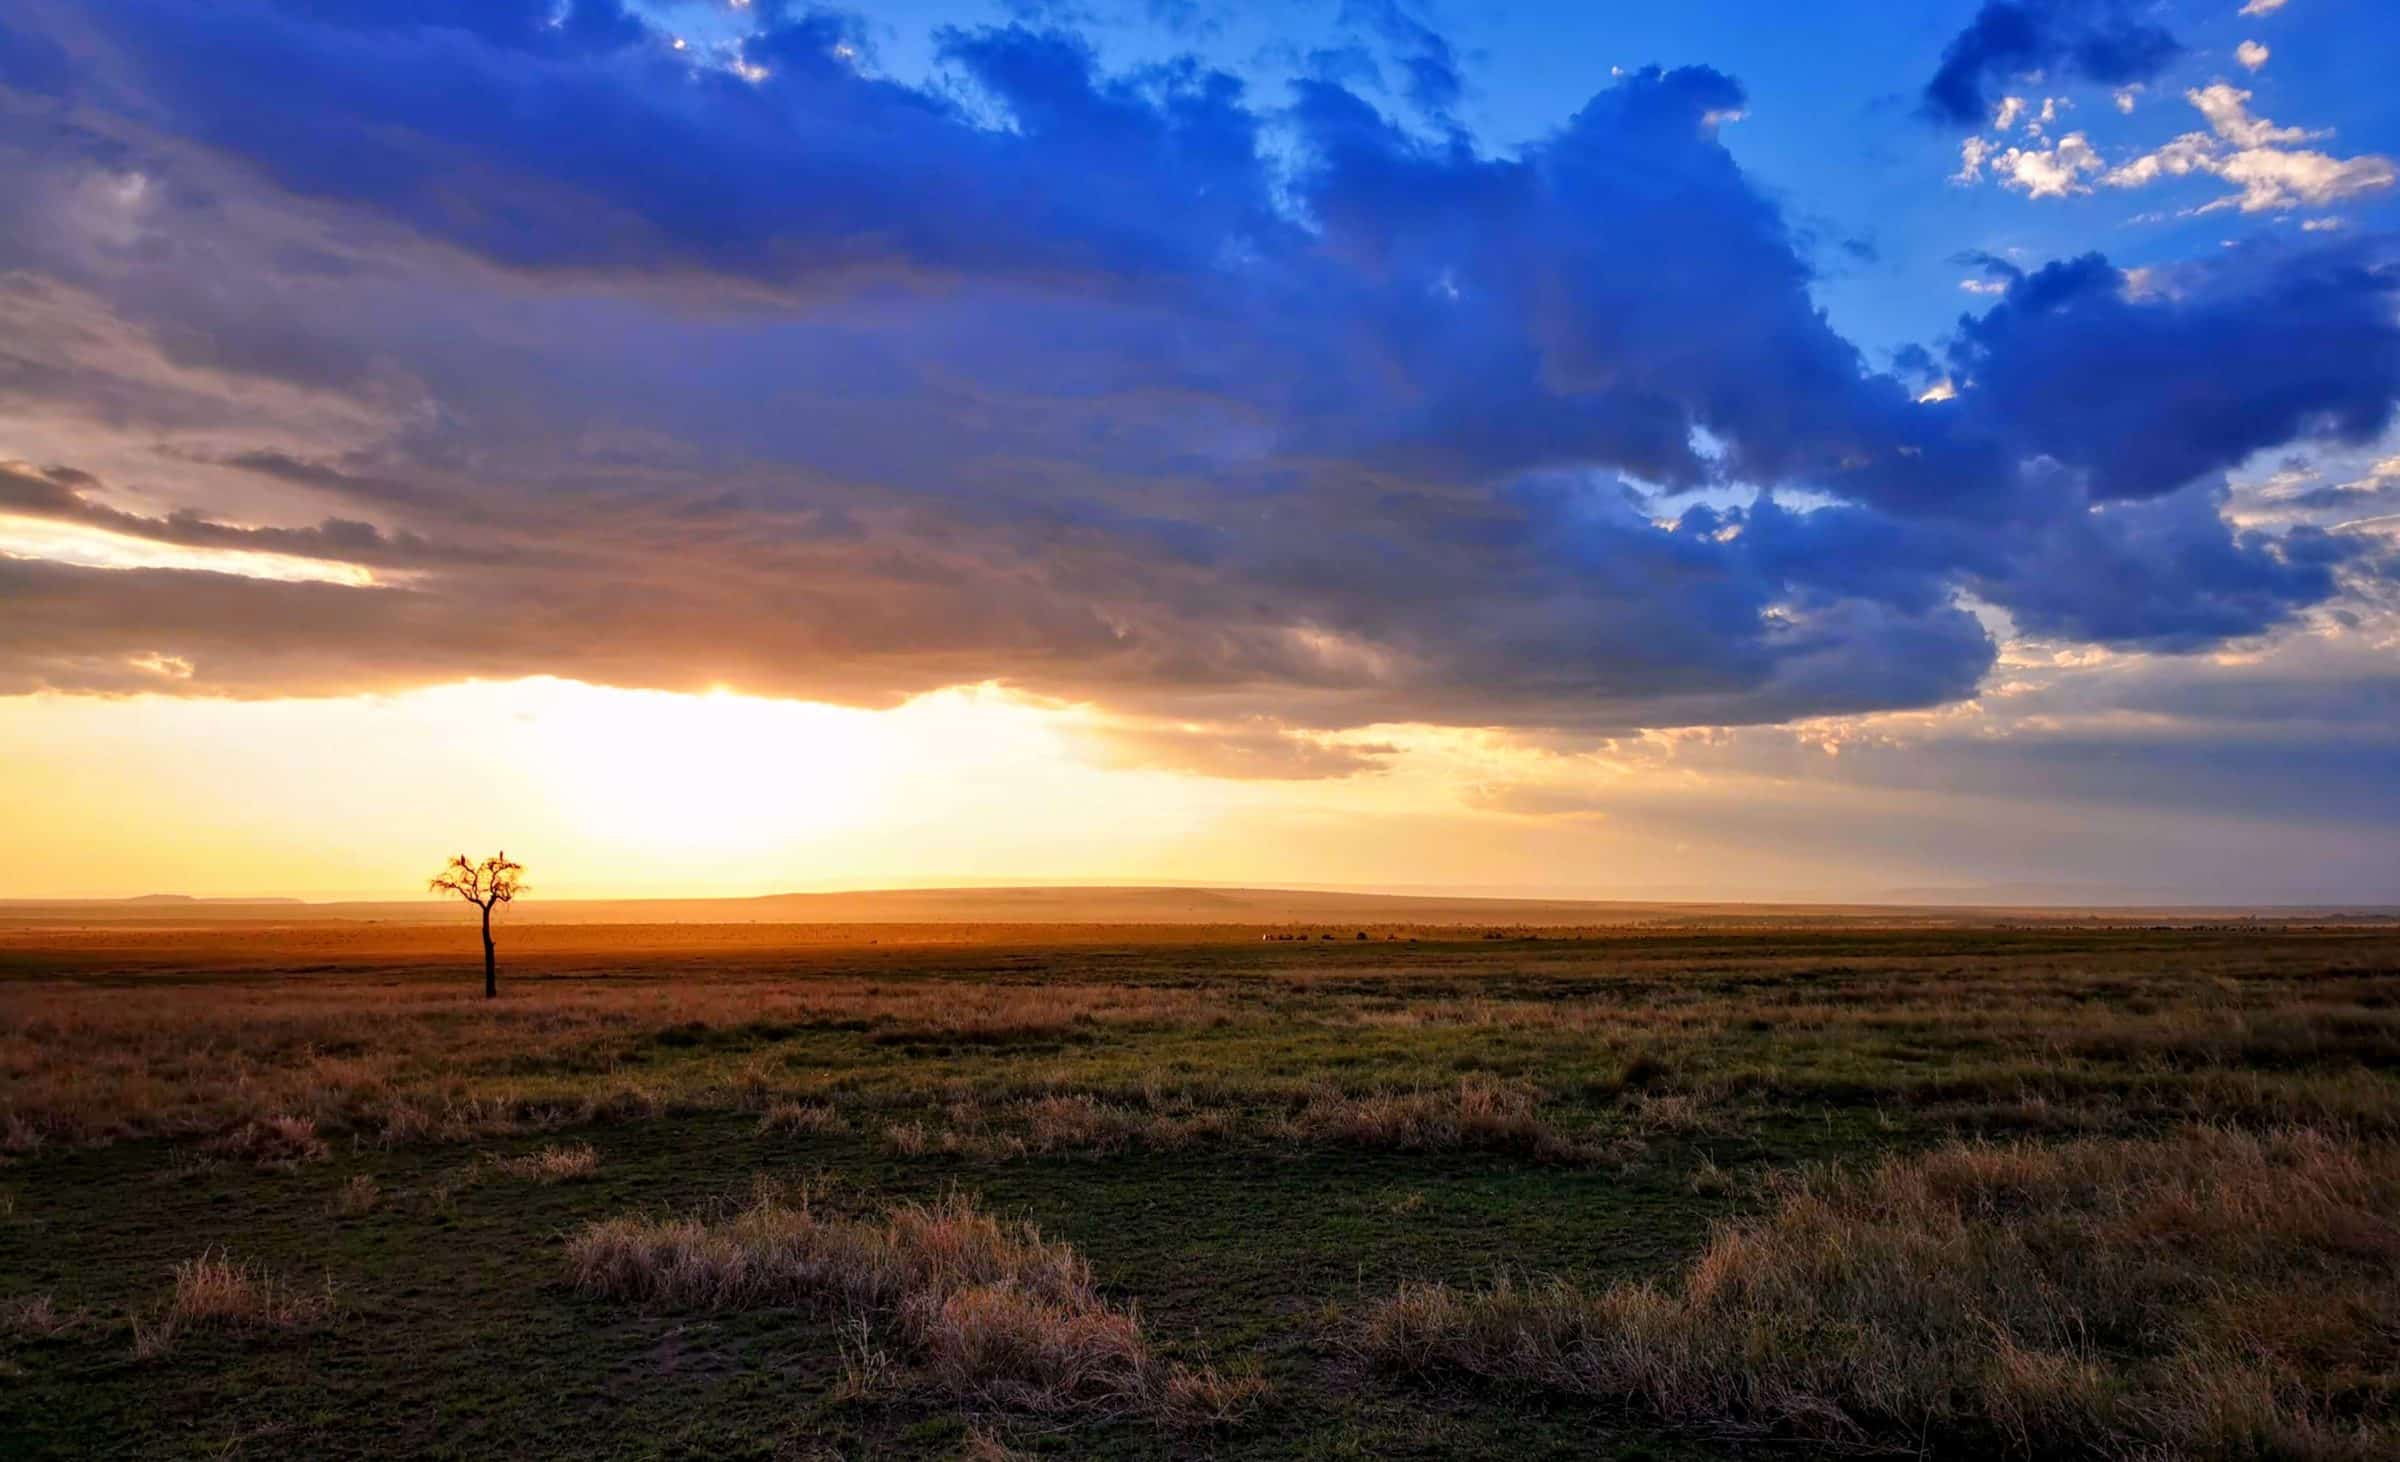 Duże chmury, zabłąkane drzewa i jakieś zwierzęta w tle. Po prostu kolejny dzień w Masajach Mara